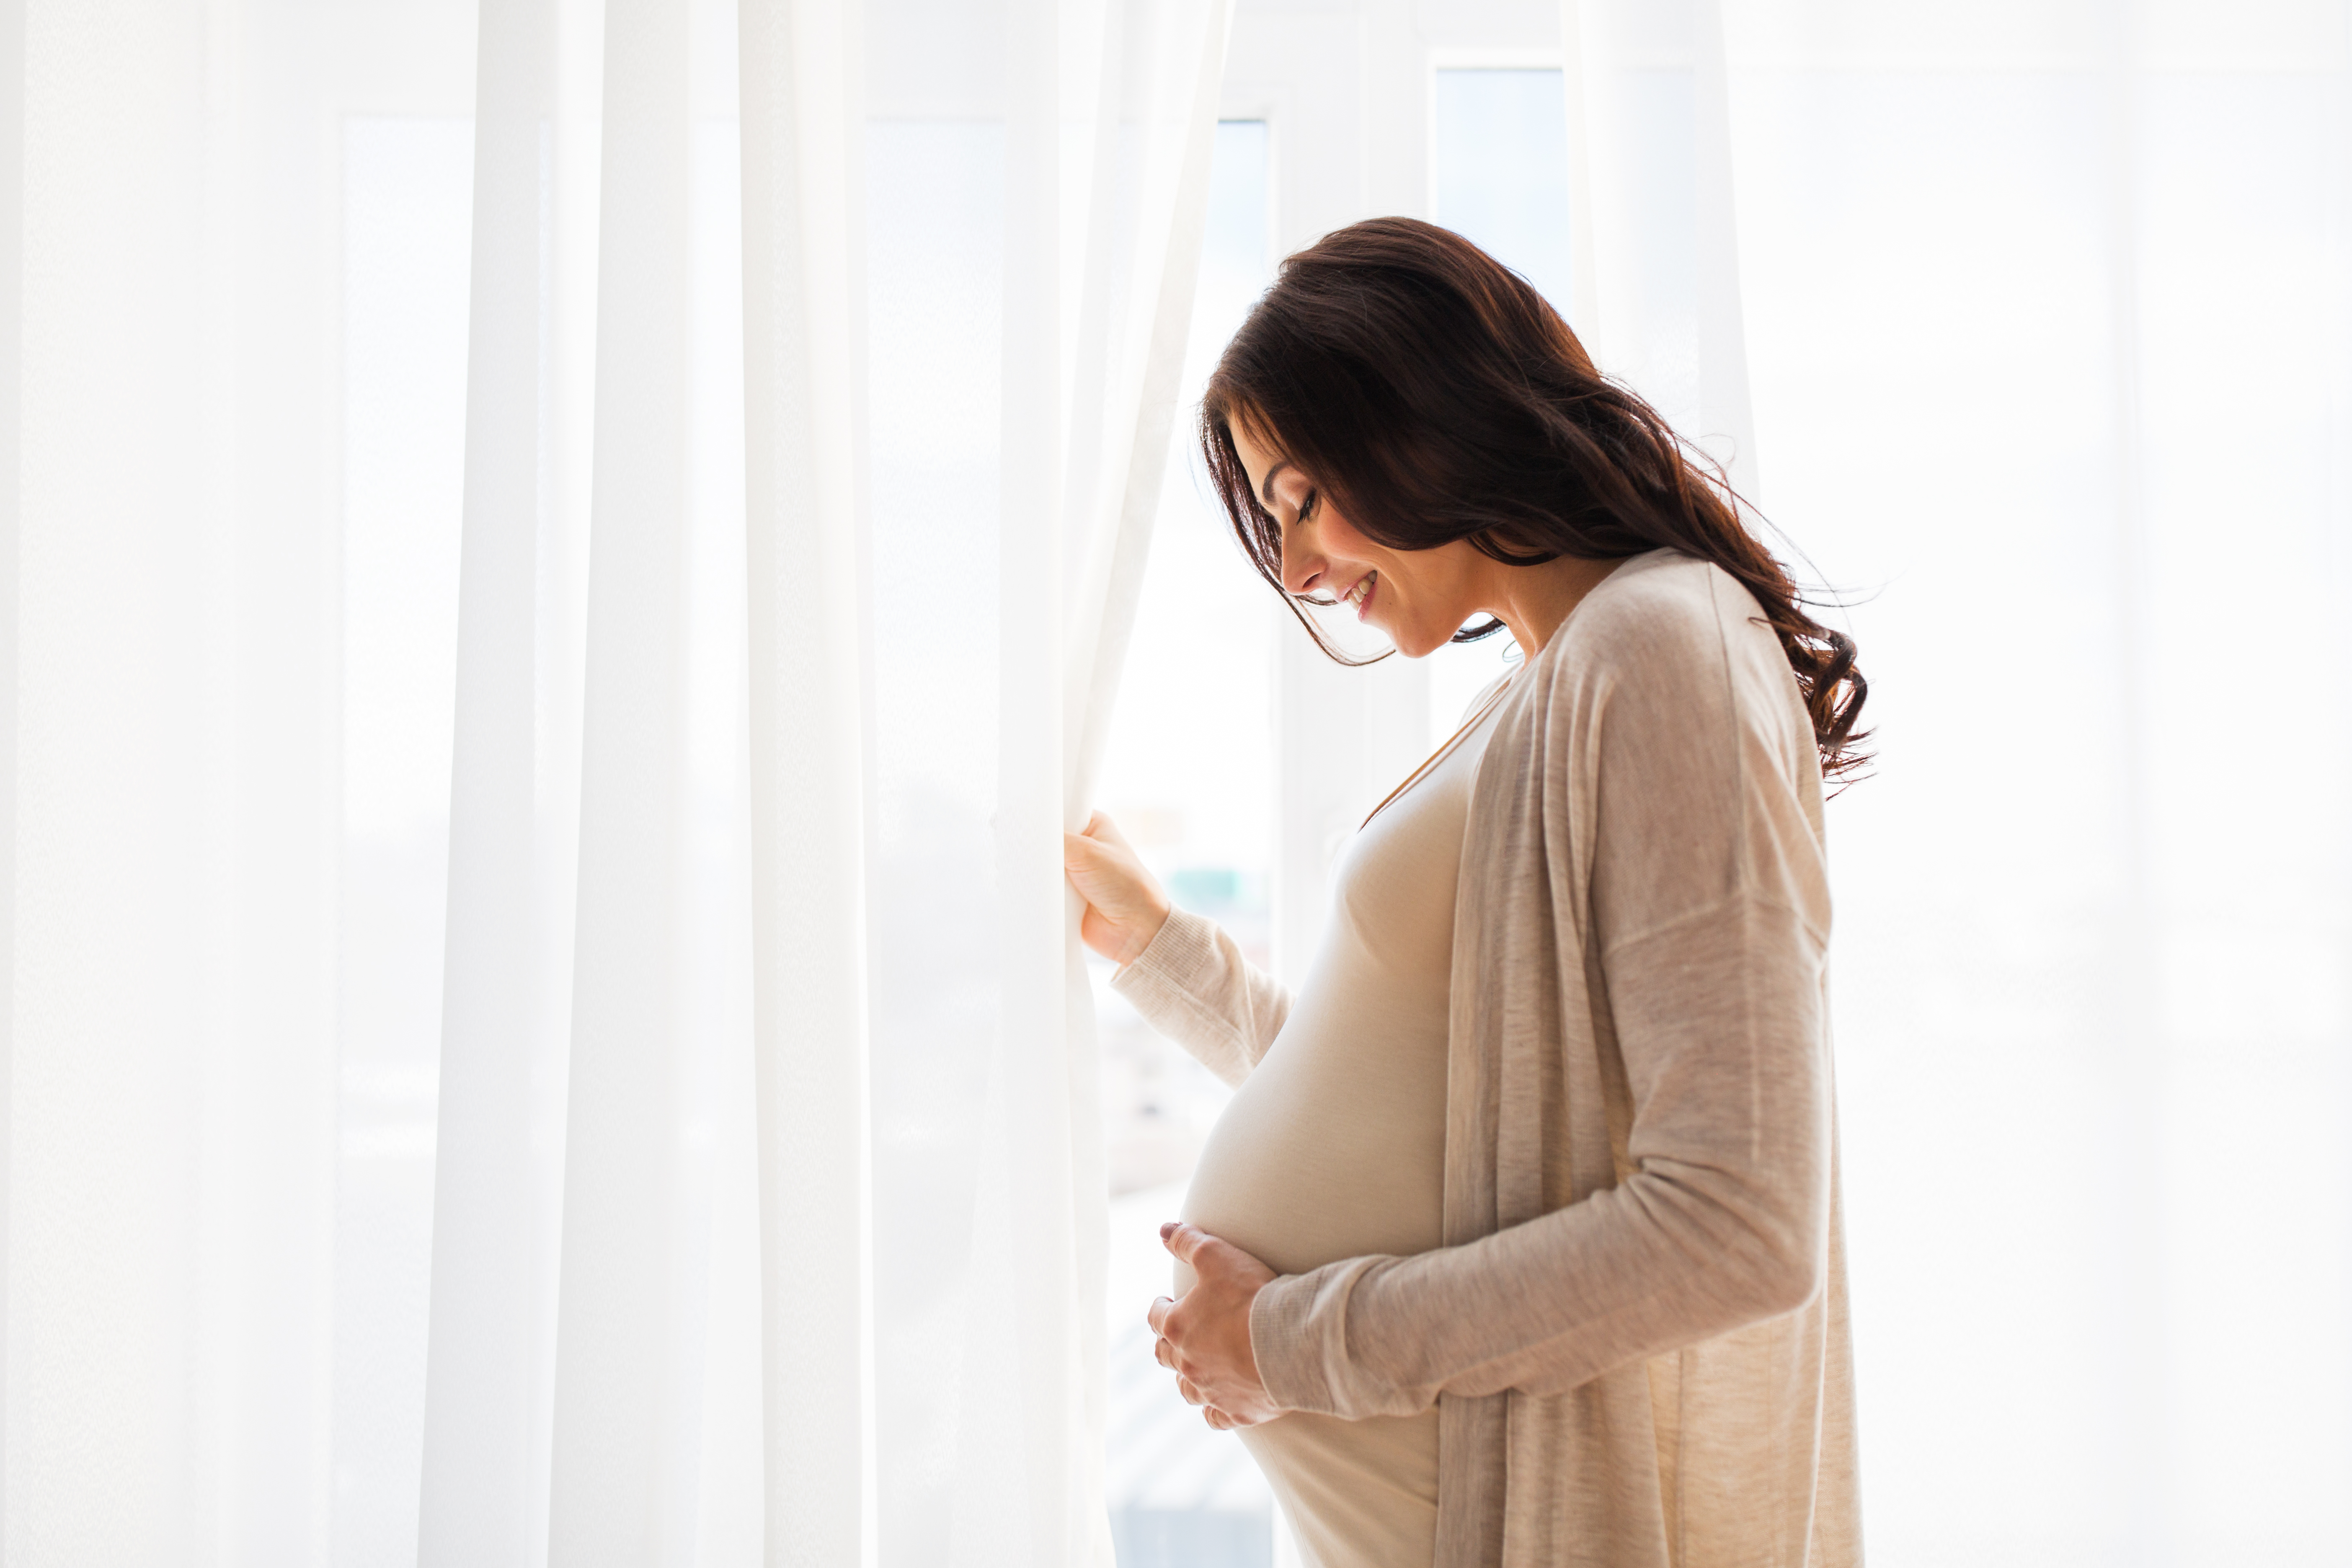 Eine schwangere Frau, die an einem Fenster steht | Quelle: Shutterstock